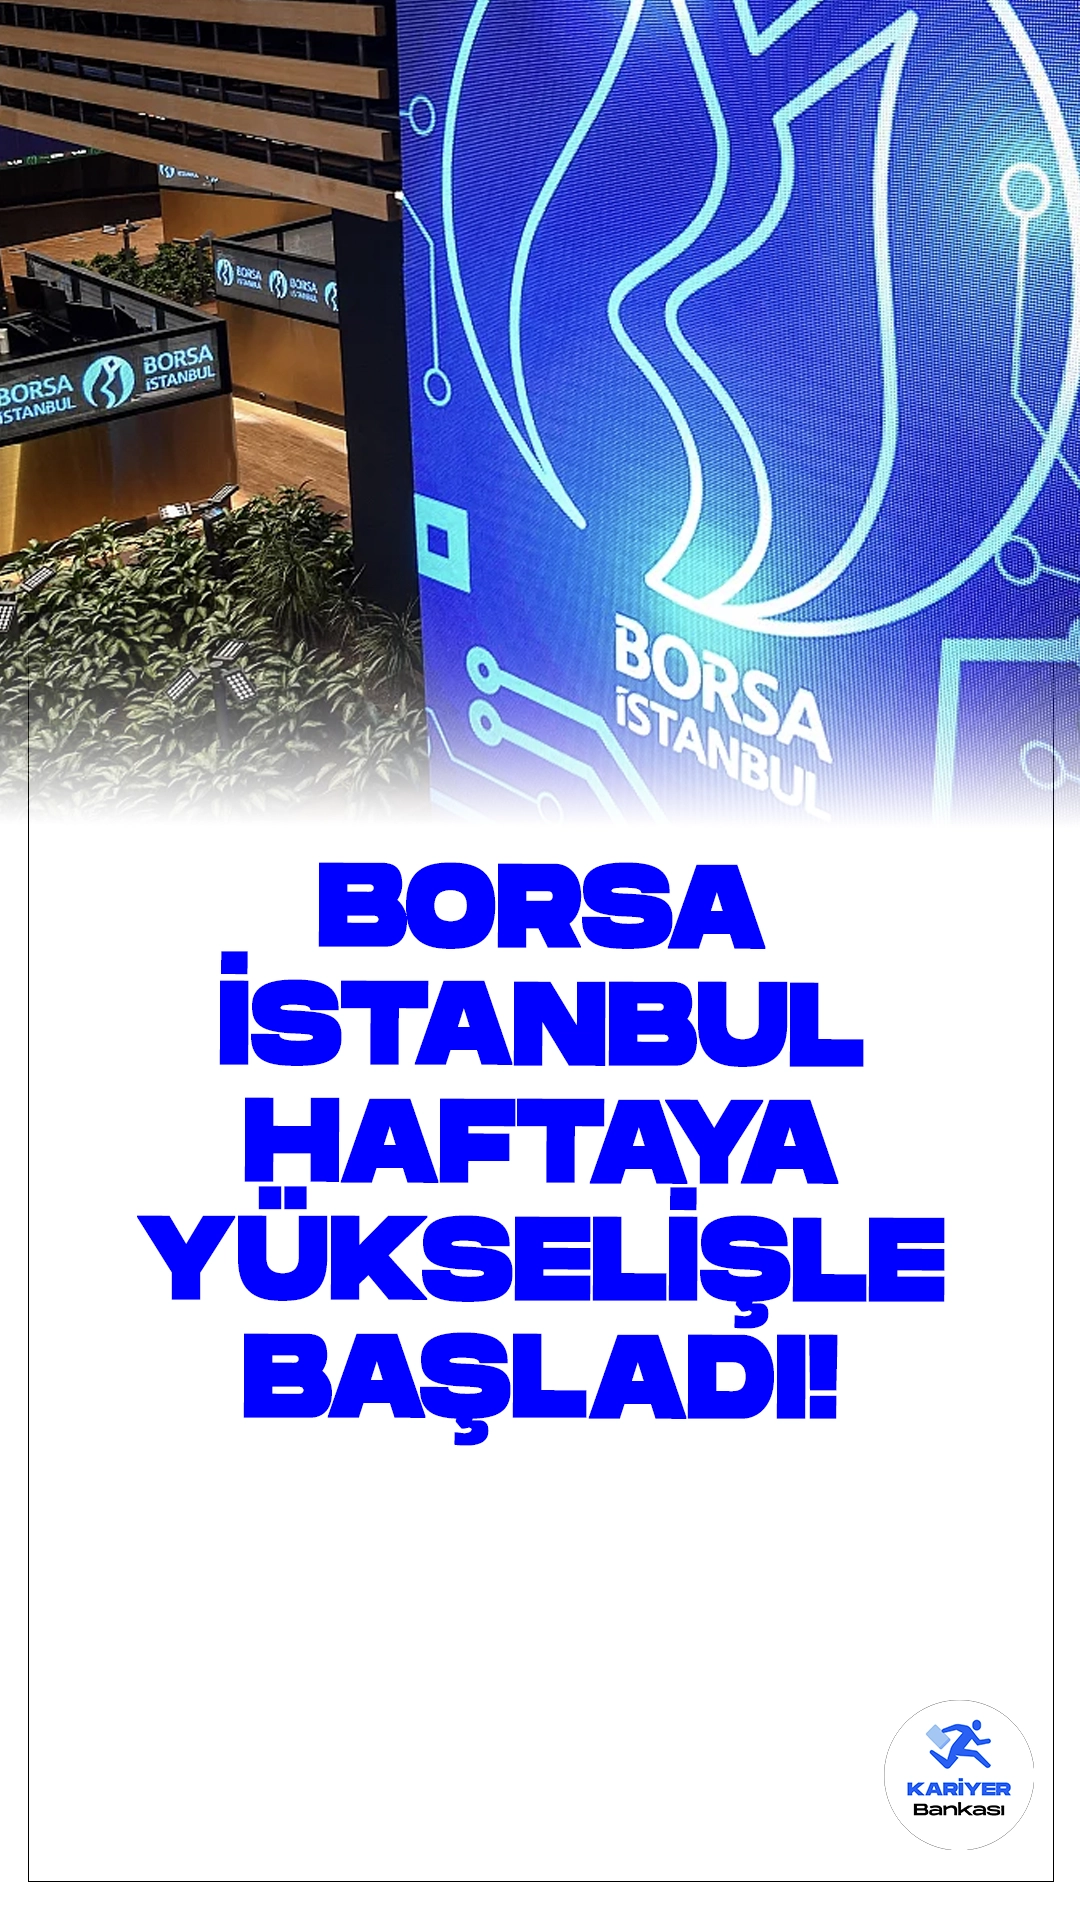 Borsa İstanbul Haftaya Yükselişle Başladı: BIST 100 Endeksi Artışla Açıldı.Borsa İstanbul'da yeni hafta, yüzde 0,05'lik bir yükselişle başladı ve BIST 100 endeksi 10.282,33 puandan açılış yaptı.